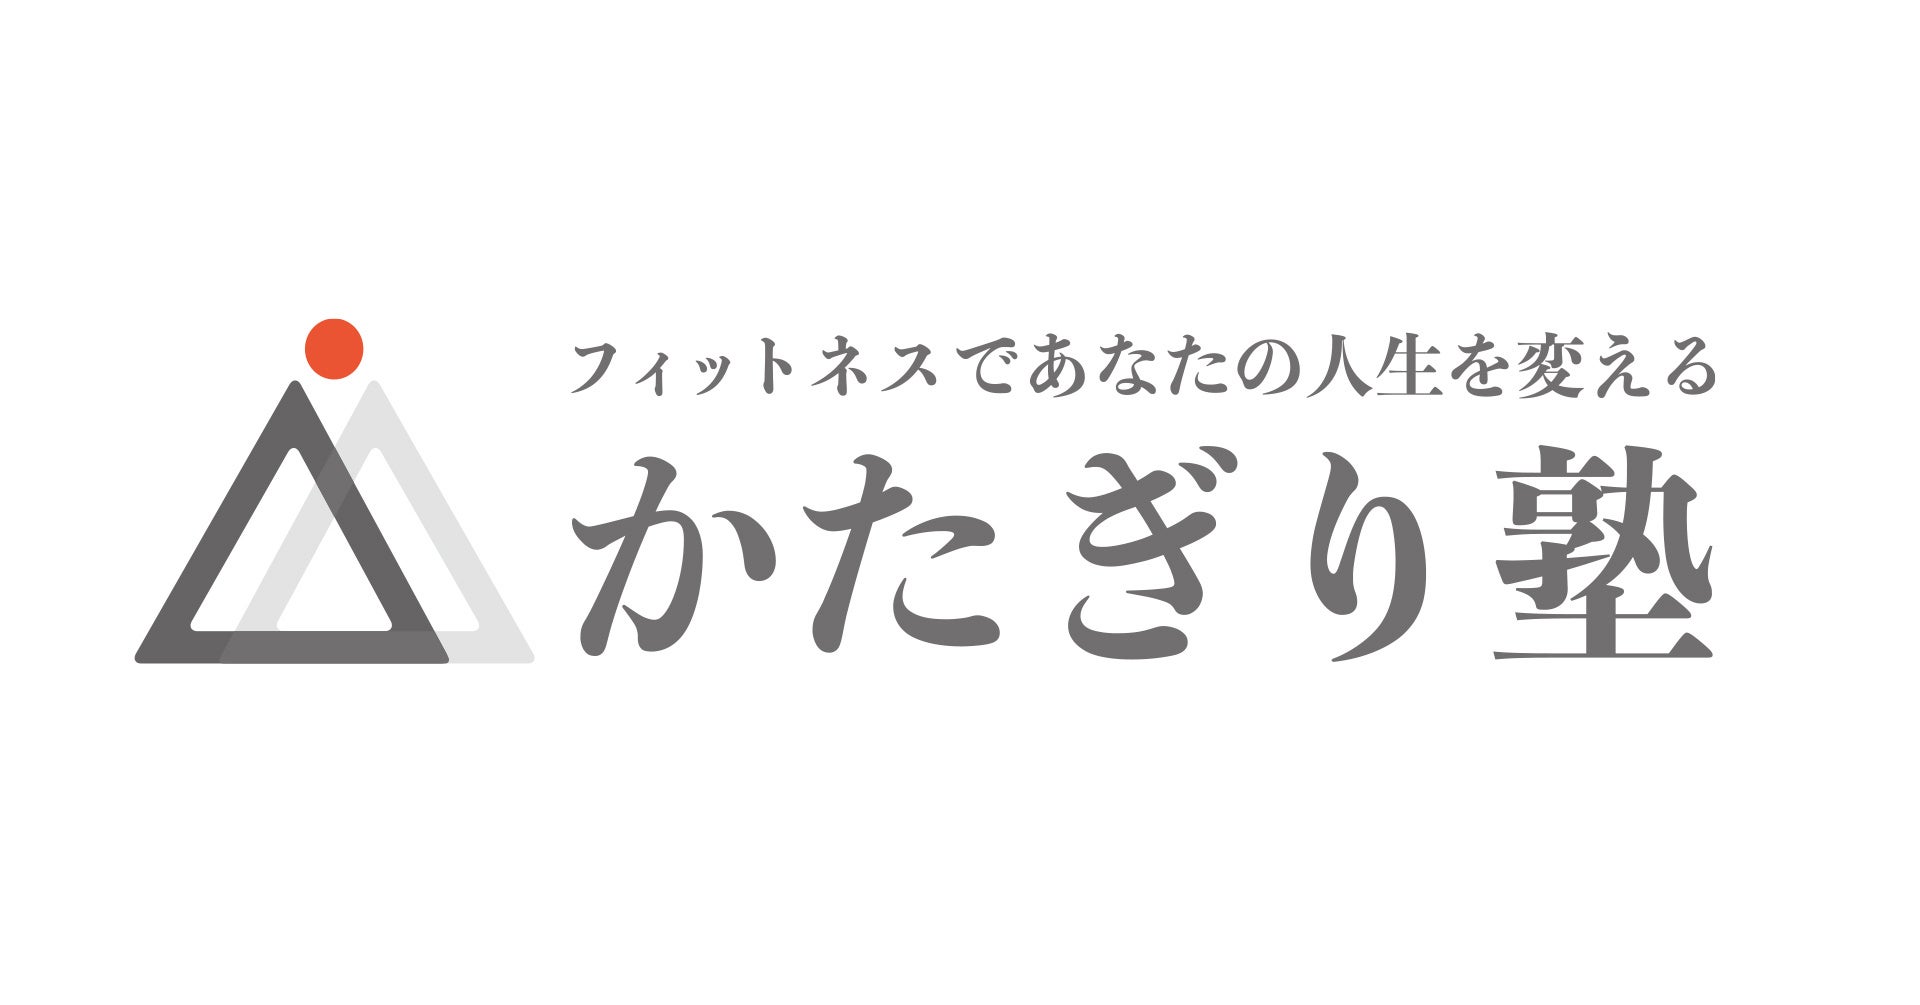 貝印のビューティーツールブランド＜KOBAKO＞より、KOBAKO 2022 Holiday Limited Collectionとして限定コフレ「カラフル マイ メイクアップセット」を発売。